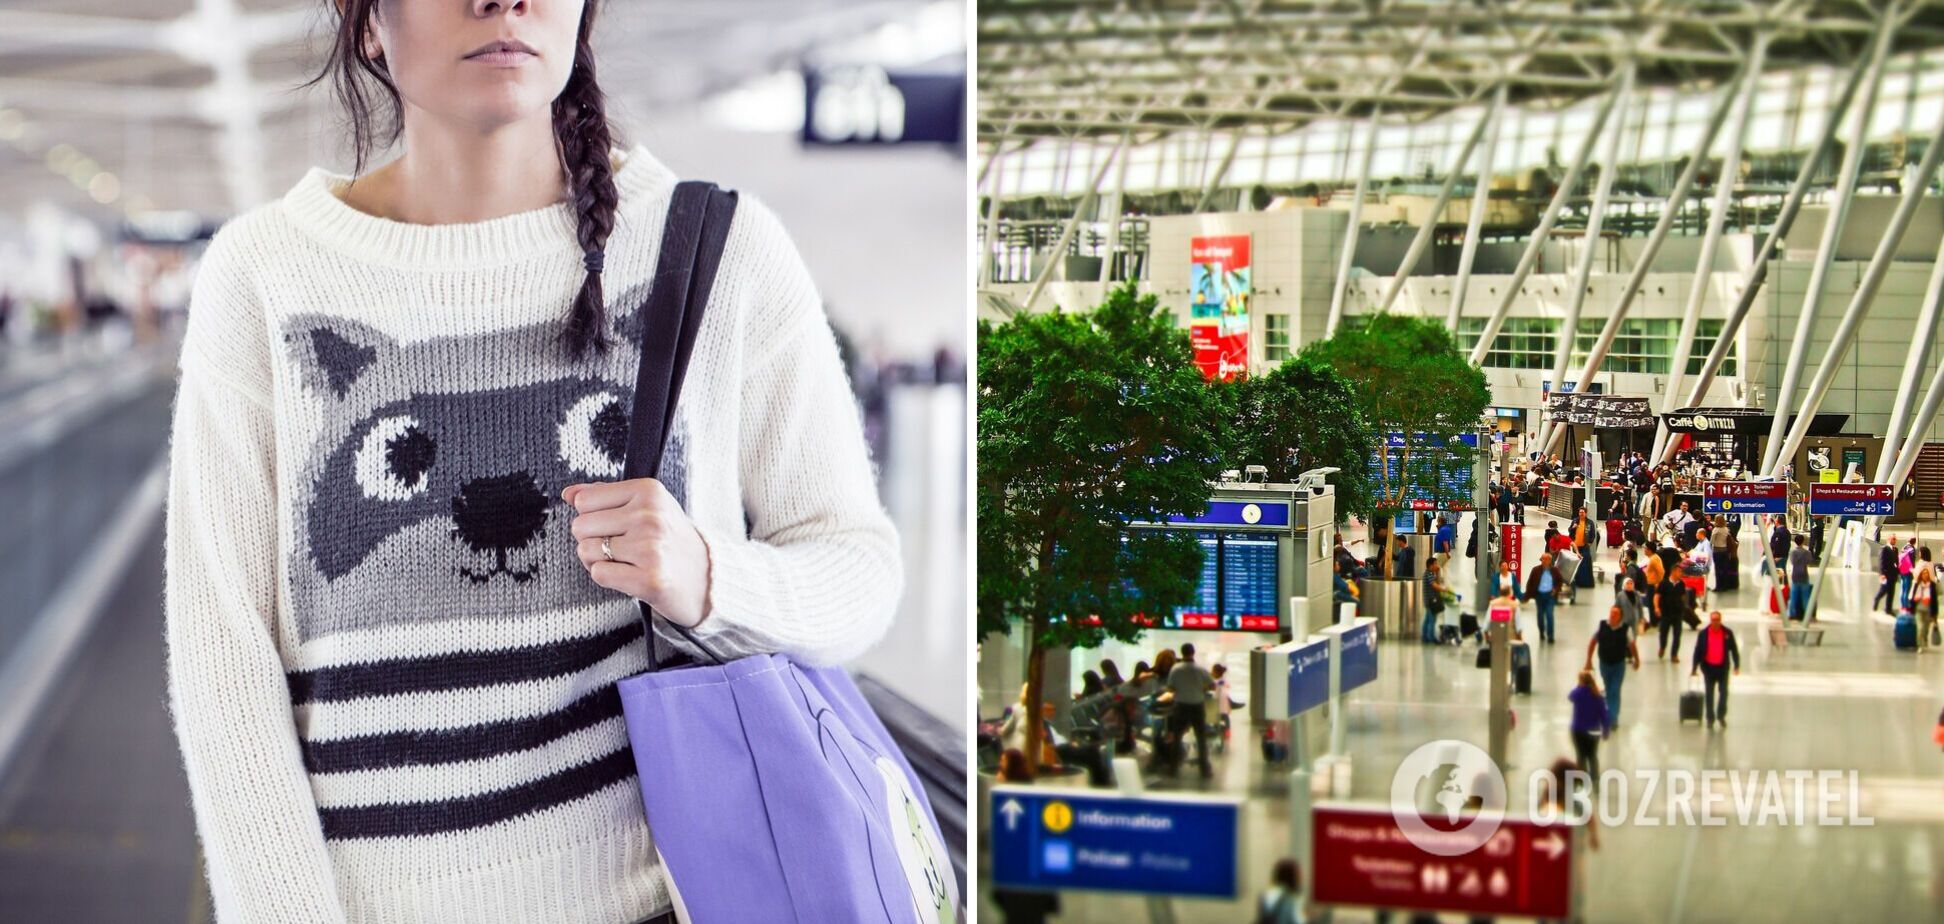 10 частих помилок туристів в аеропорту, які коштують гроші